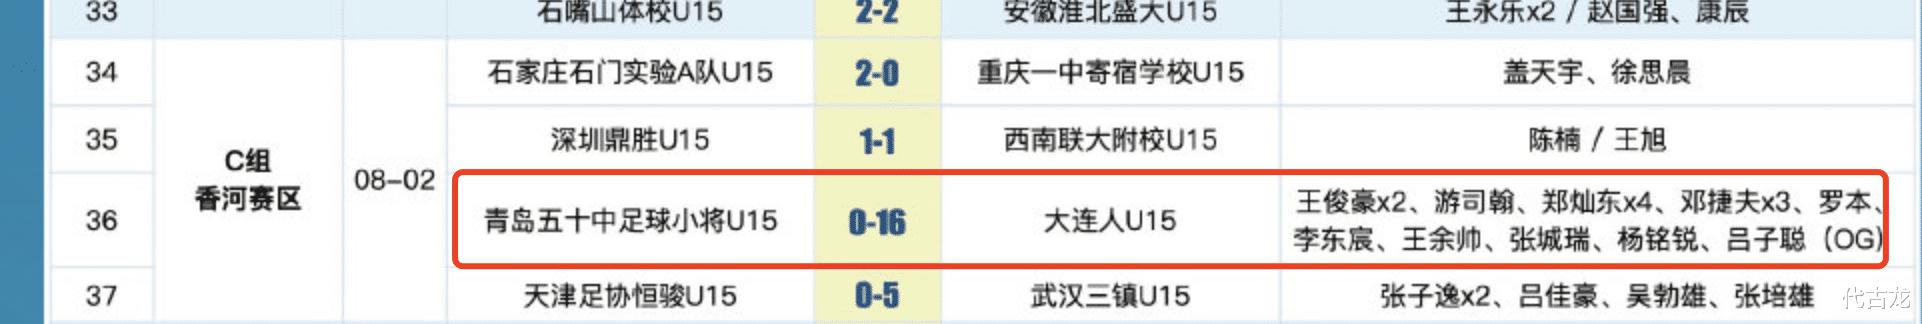 16-0，18-0，24-0，中国青少年足球联赛全国总决赛惨案不断(3)